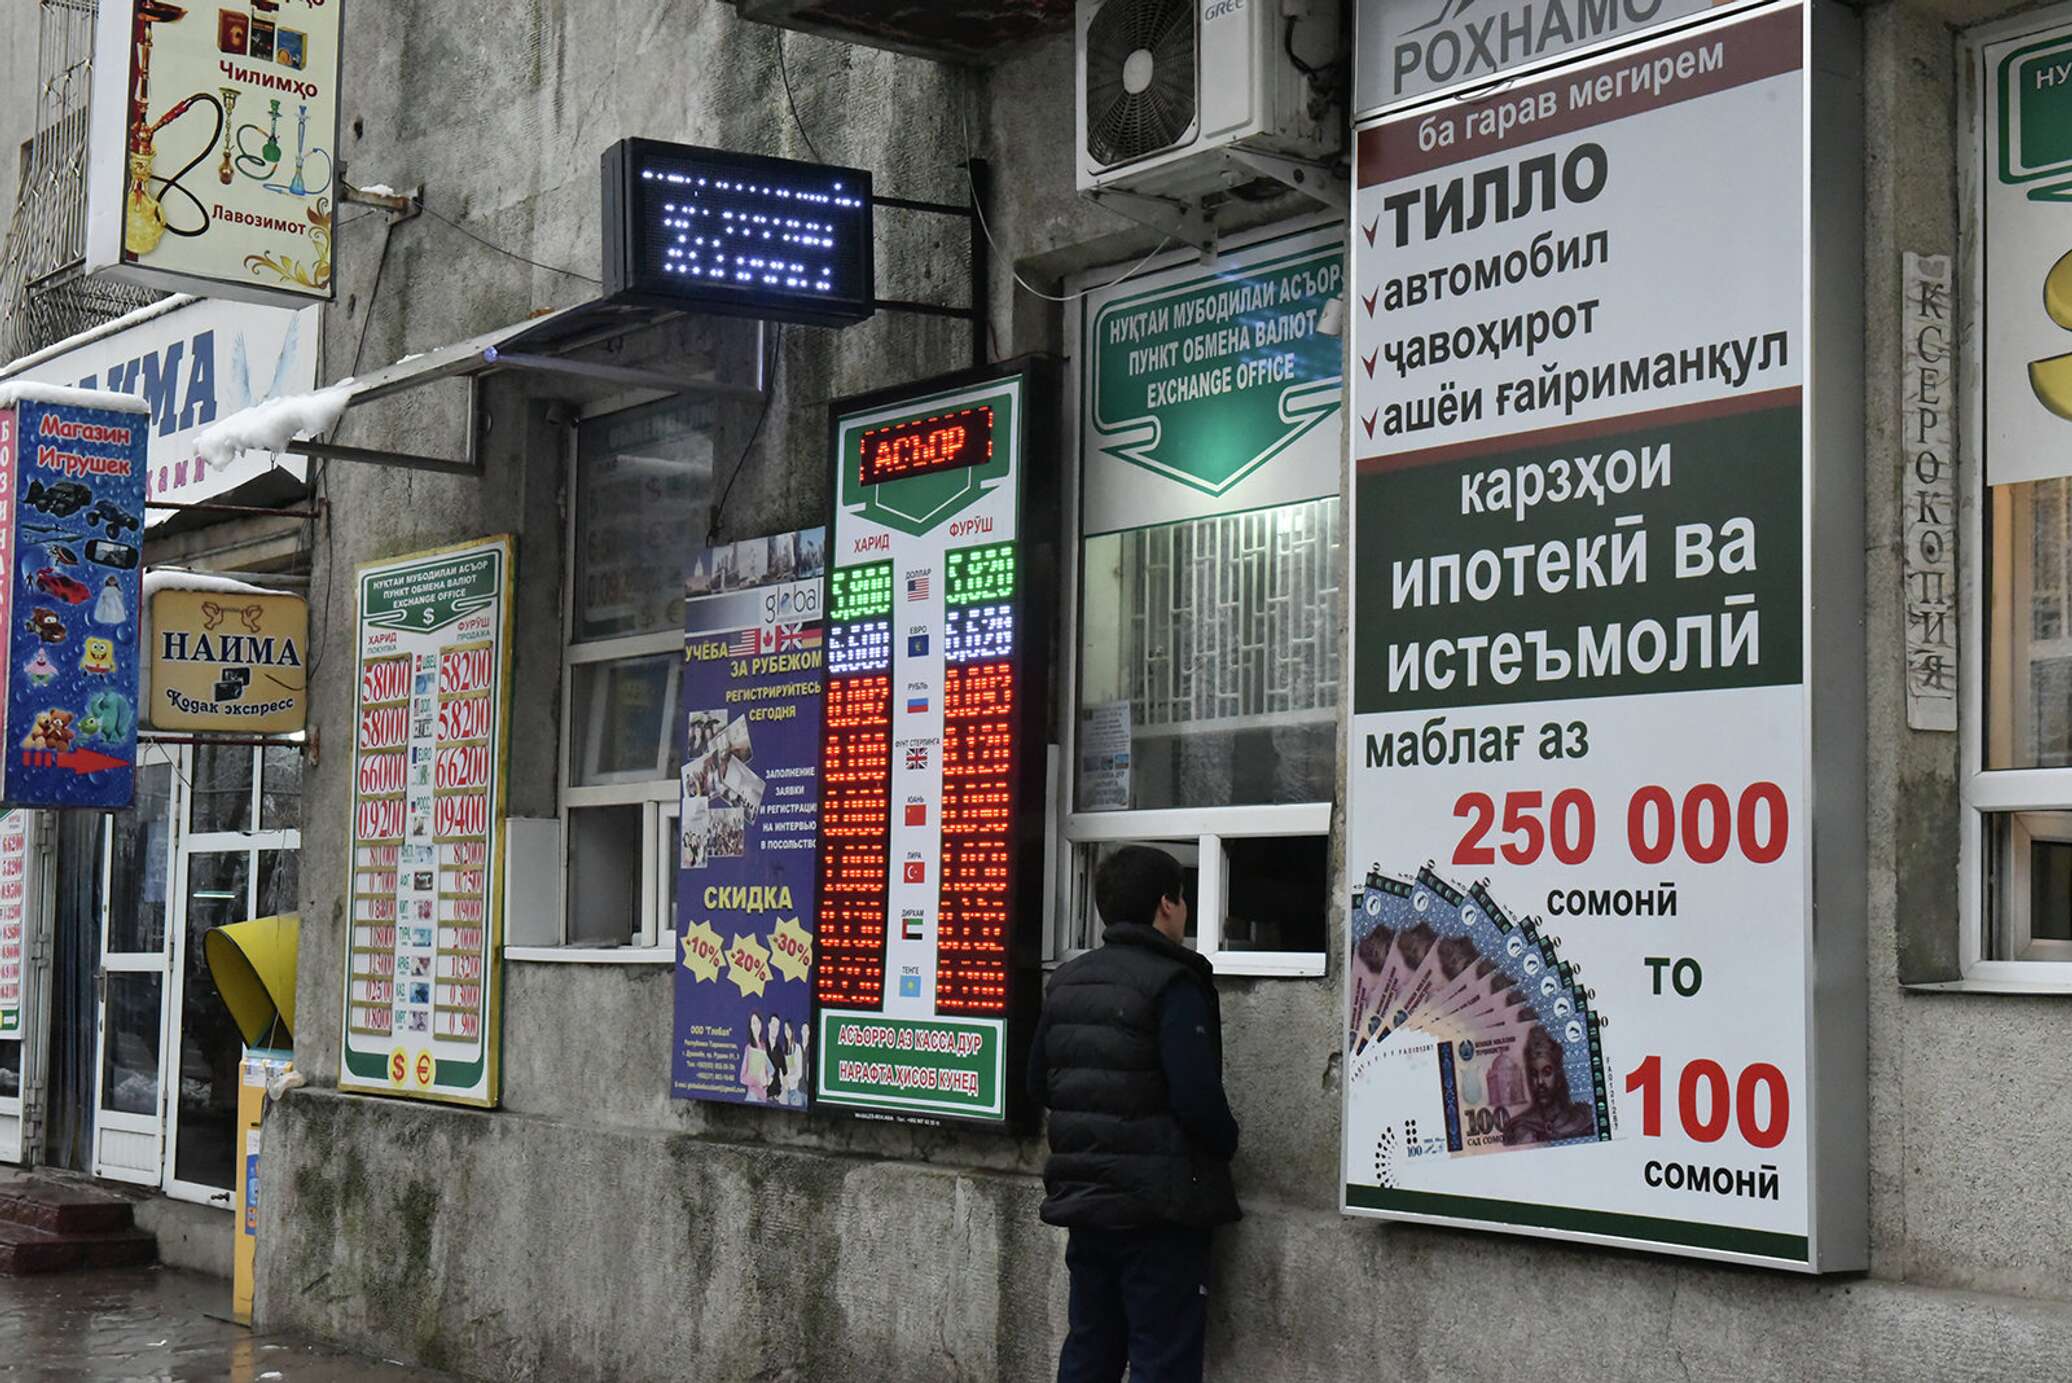 Курс таджикских валют на сегодня. Обмен валюты. Обменник валют. Курсы валют в Таджикистане. Обменные пункты в Таджикистане.